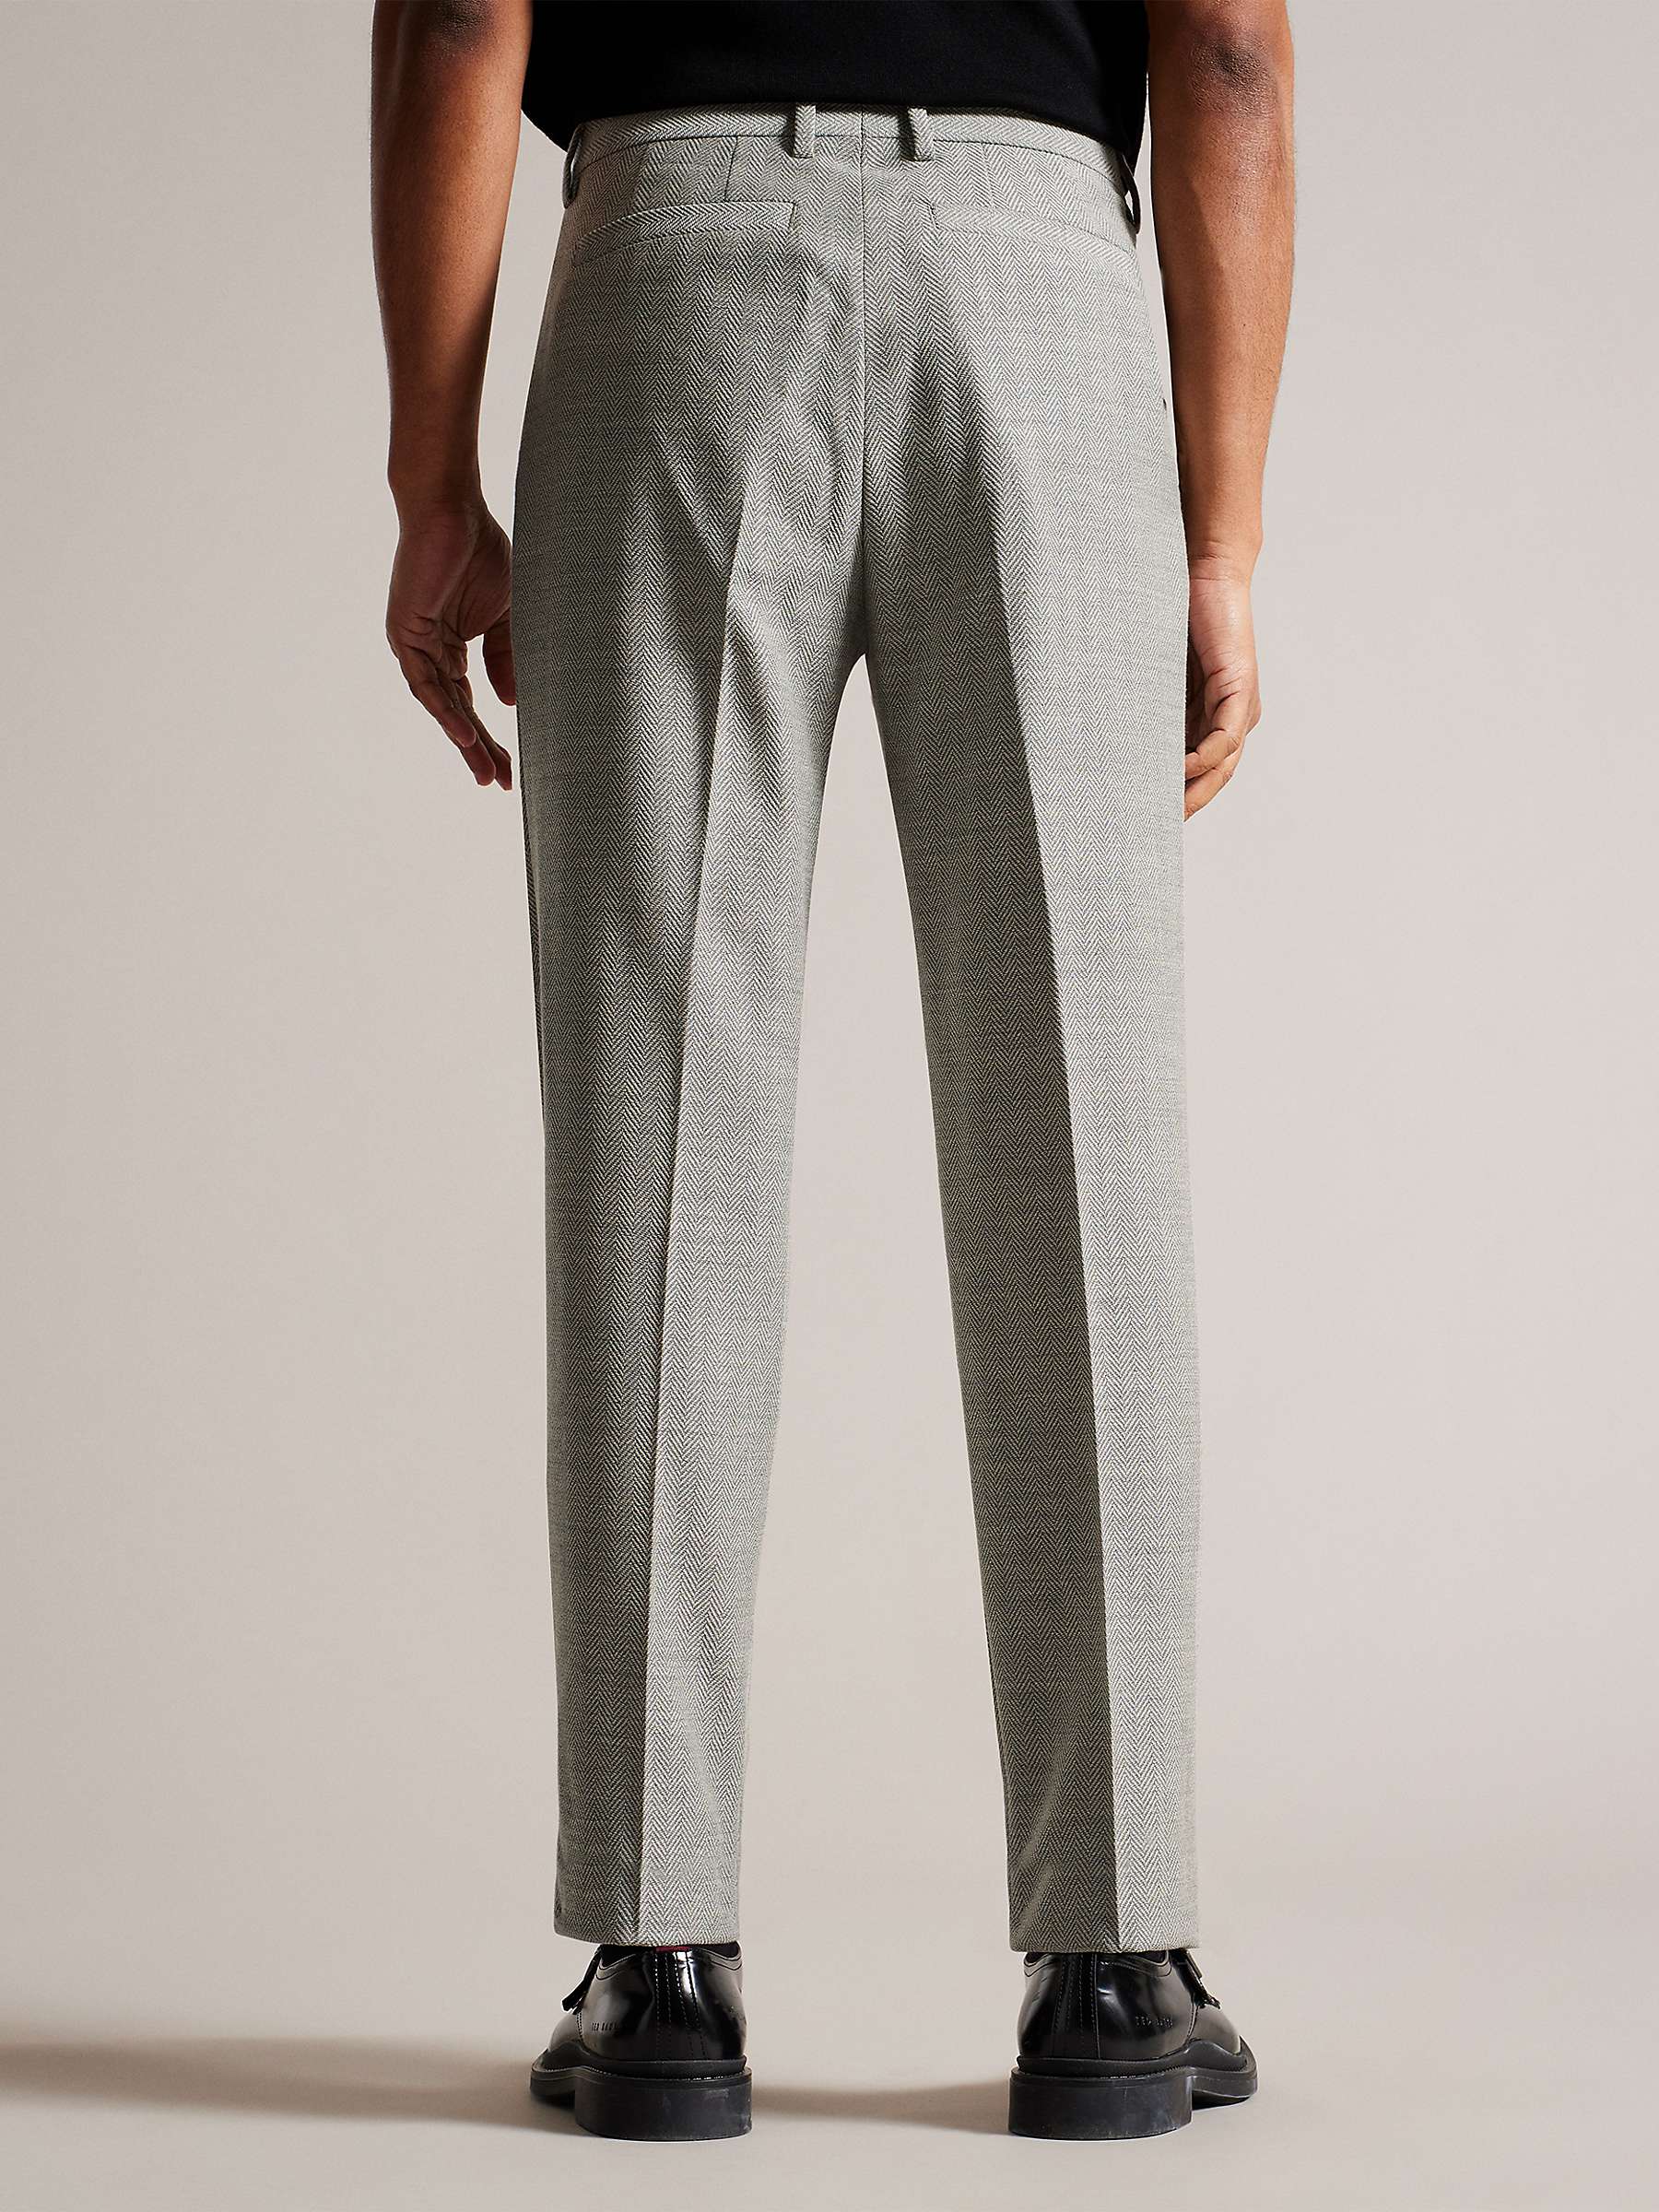 Buy Ted Baker Slim Fit Herringbone Trousers, Grey Online at johnlewis.com